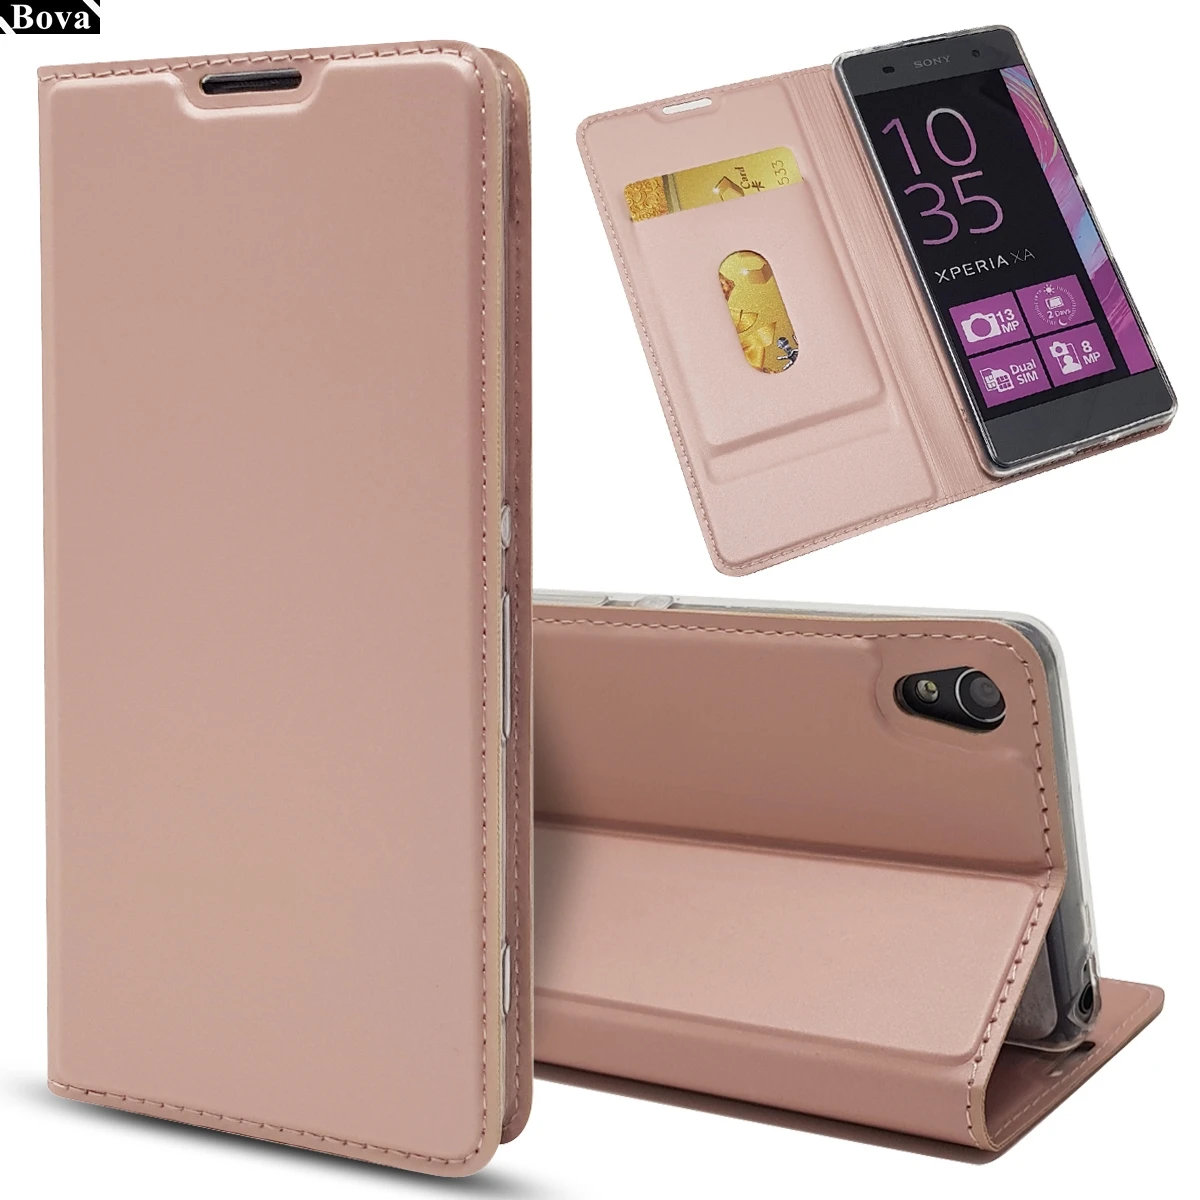 Чехол для sony XA матовый кошелек чехол для телефона s для sony Xperia XA Магнитный адсорбционный чехол держатель для карт защитный чехол caque fundas - Цвет: Pink Gold